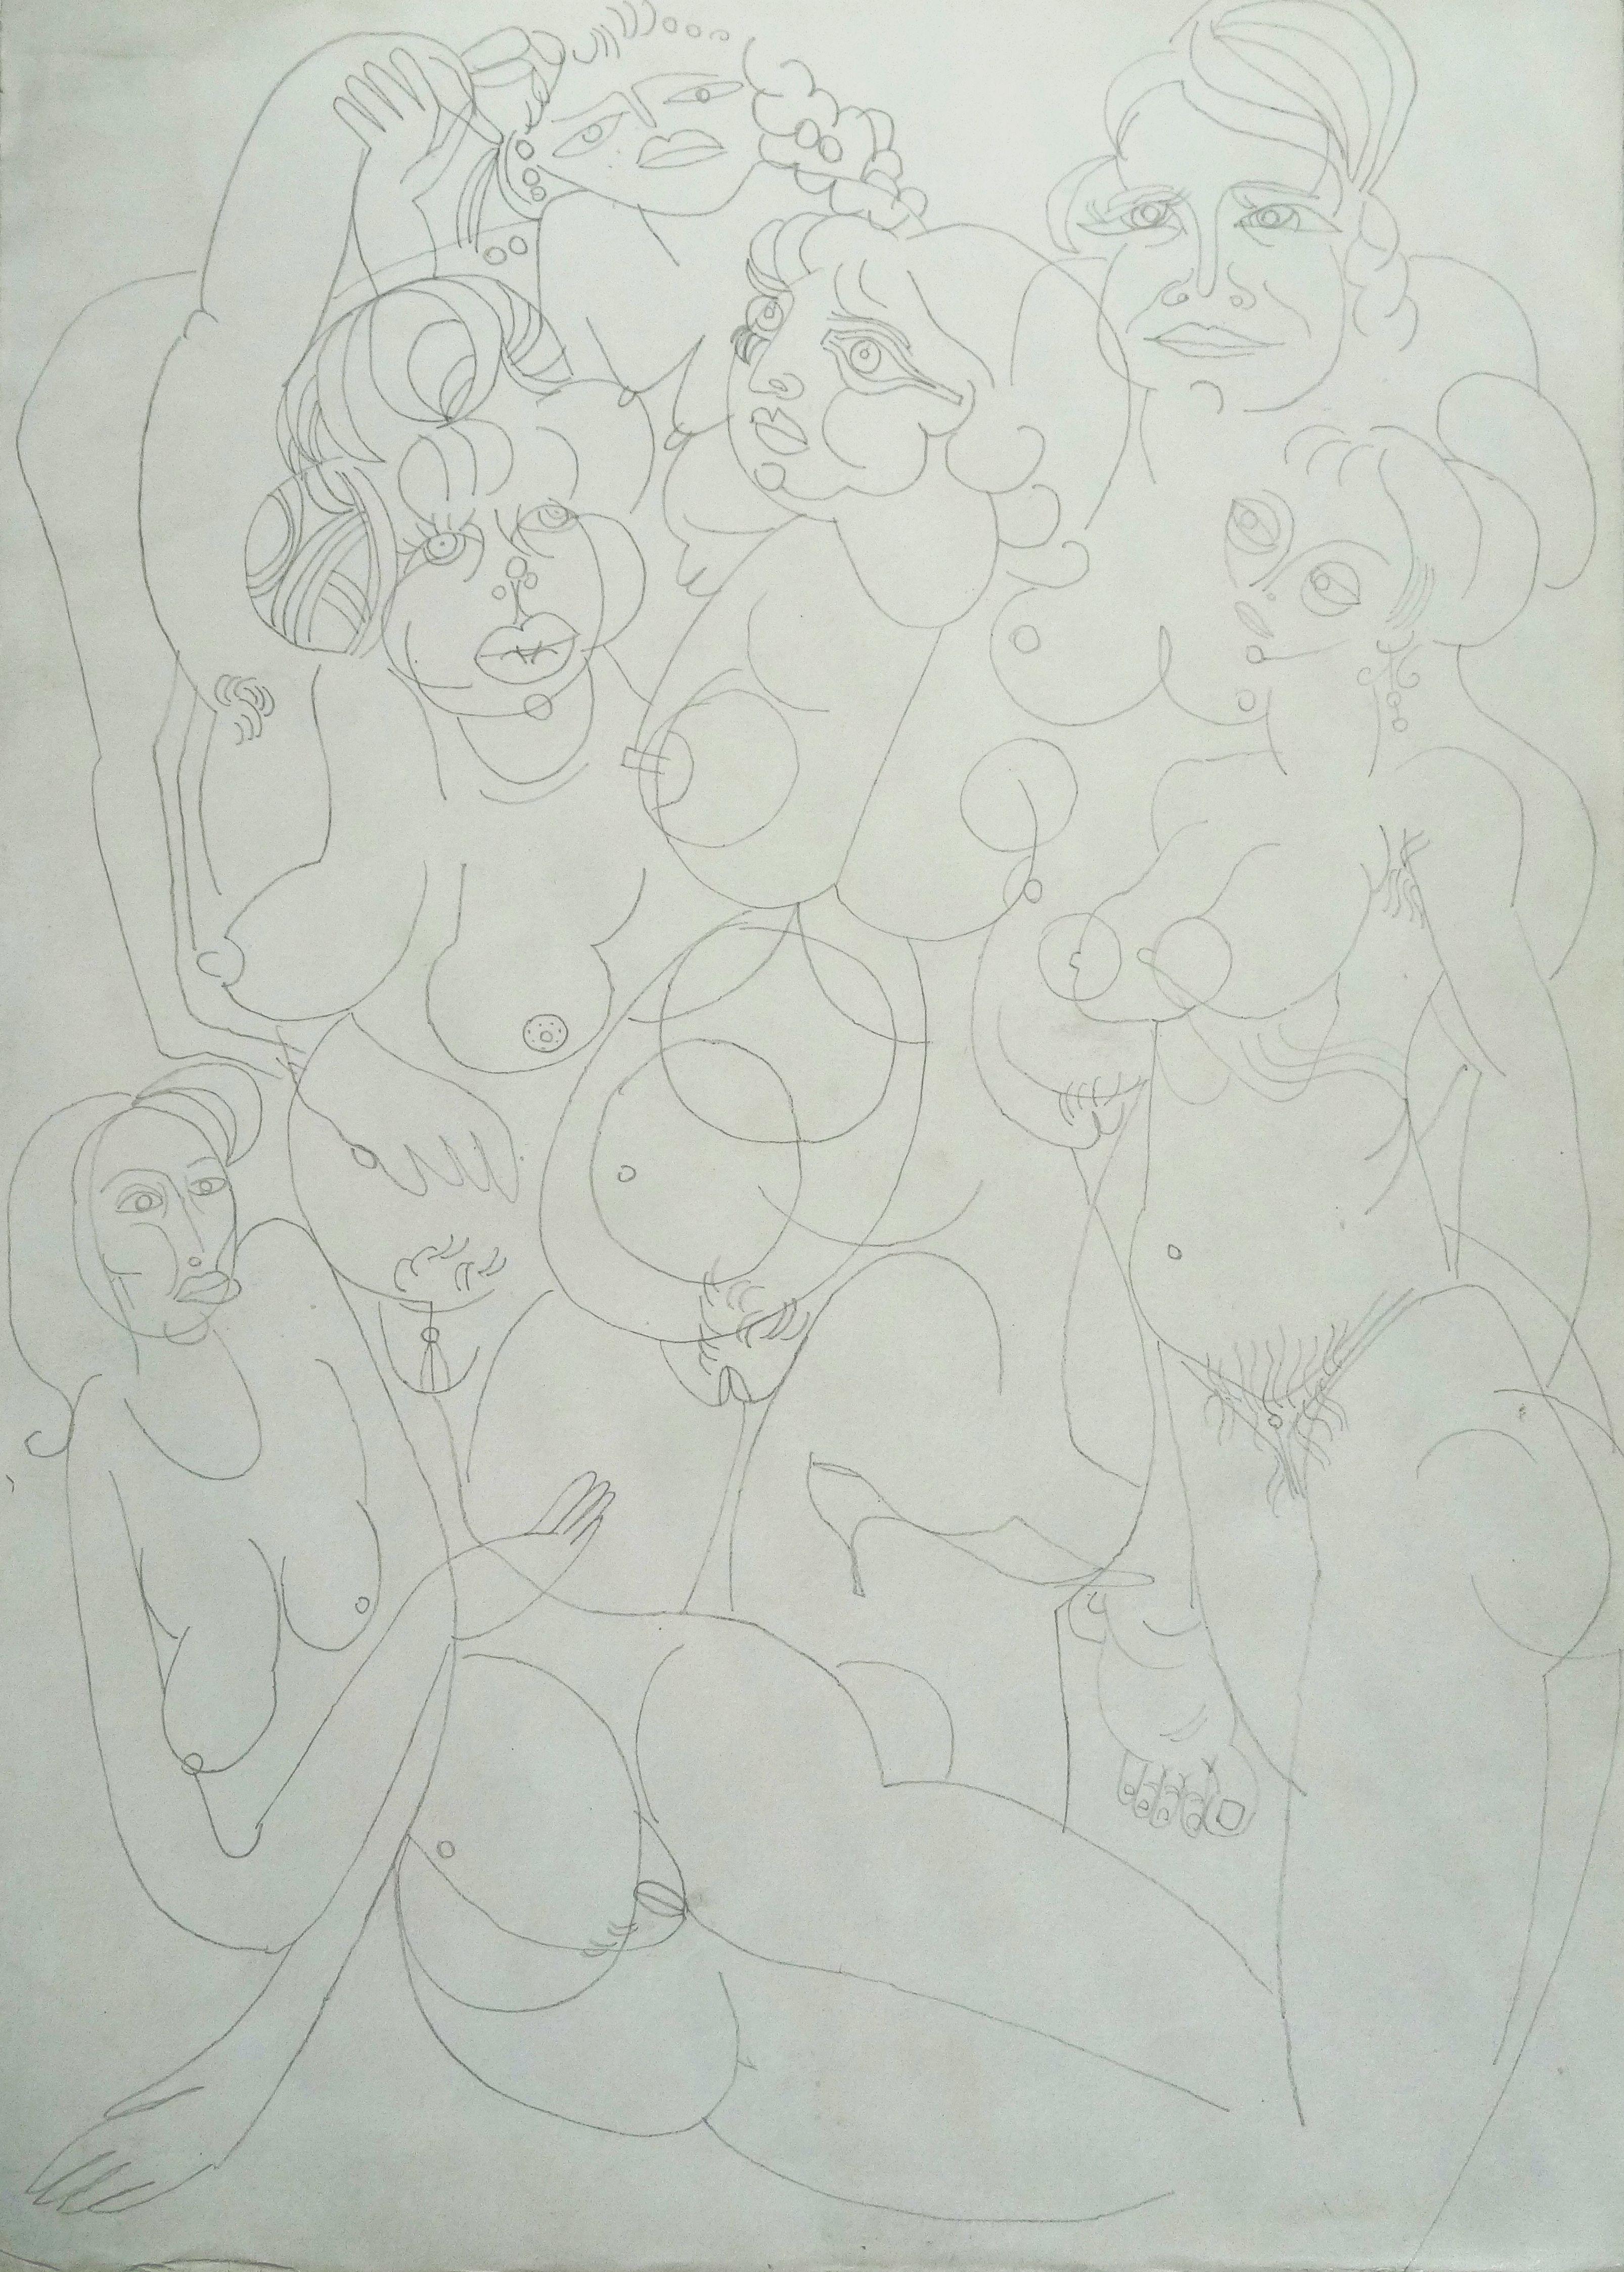 Composition with women. 1968. Paper, pencil, 35x24.5 cm